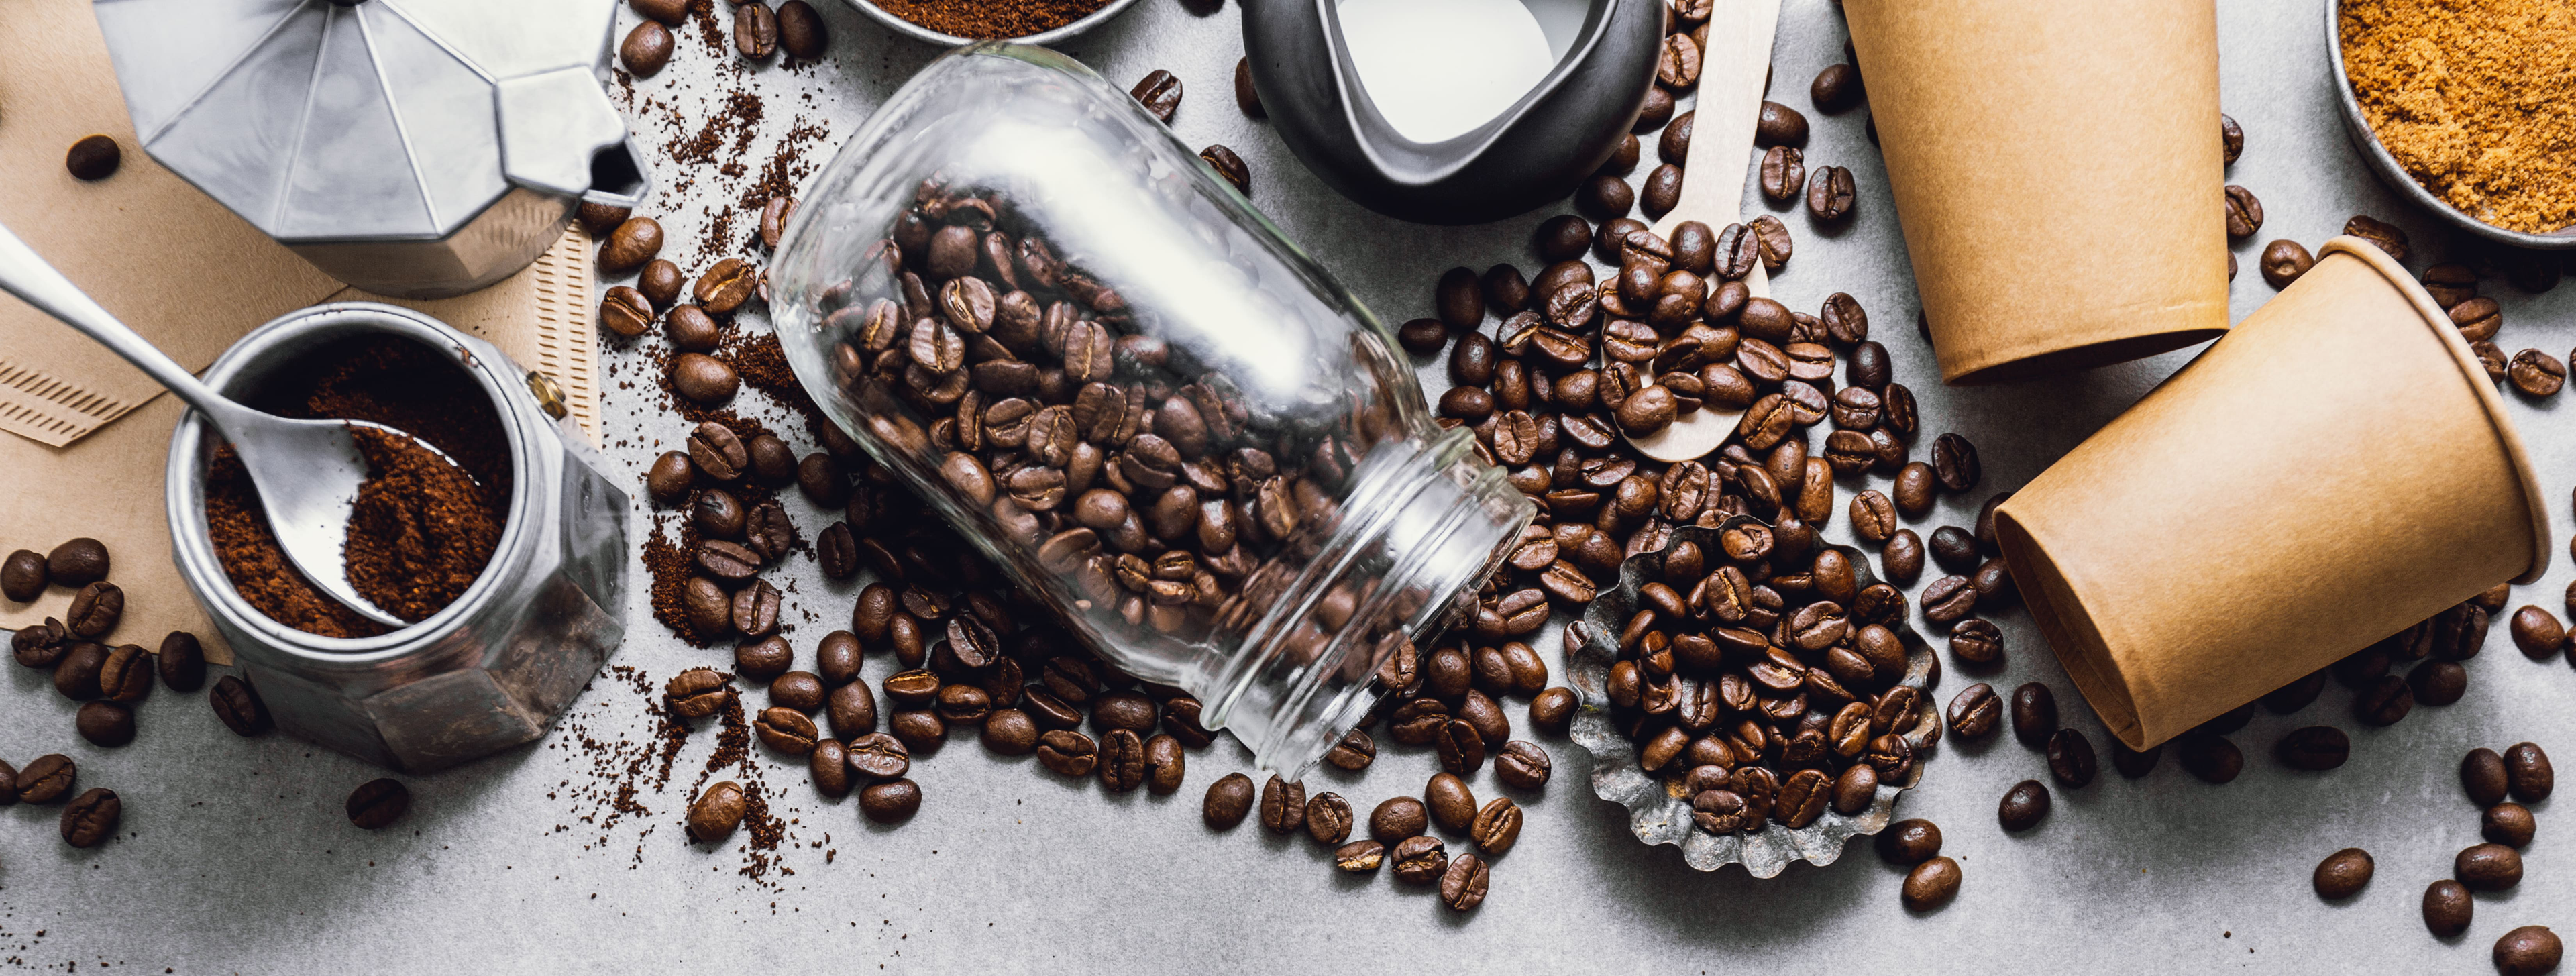 Verschiedene Kaffeebohnen, gemahlener Kaffee, eine Espressokanne und Pappbecher, arrangiert auf einer grauen Oberfläche, zeigen die Vielfalt der Kaffeezubereitung.